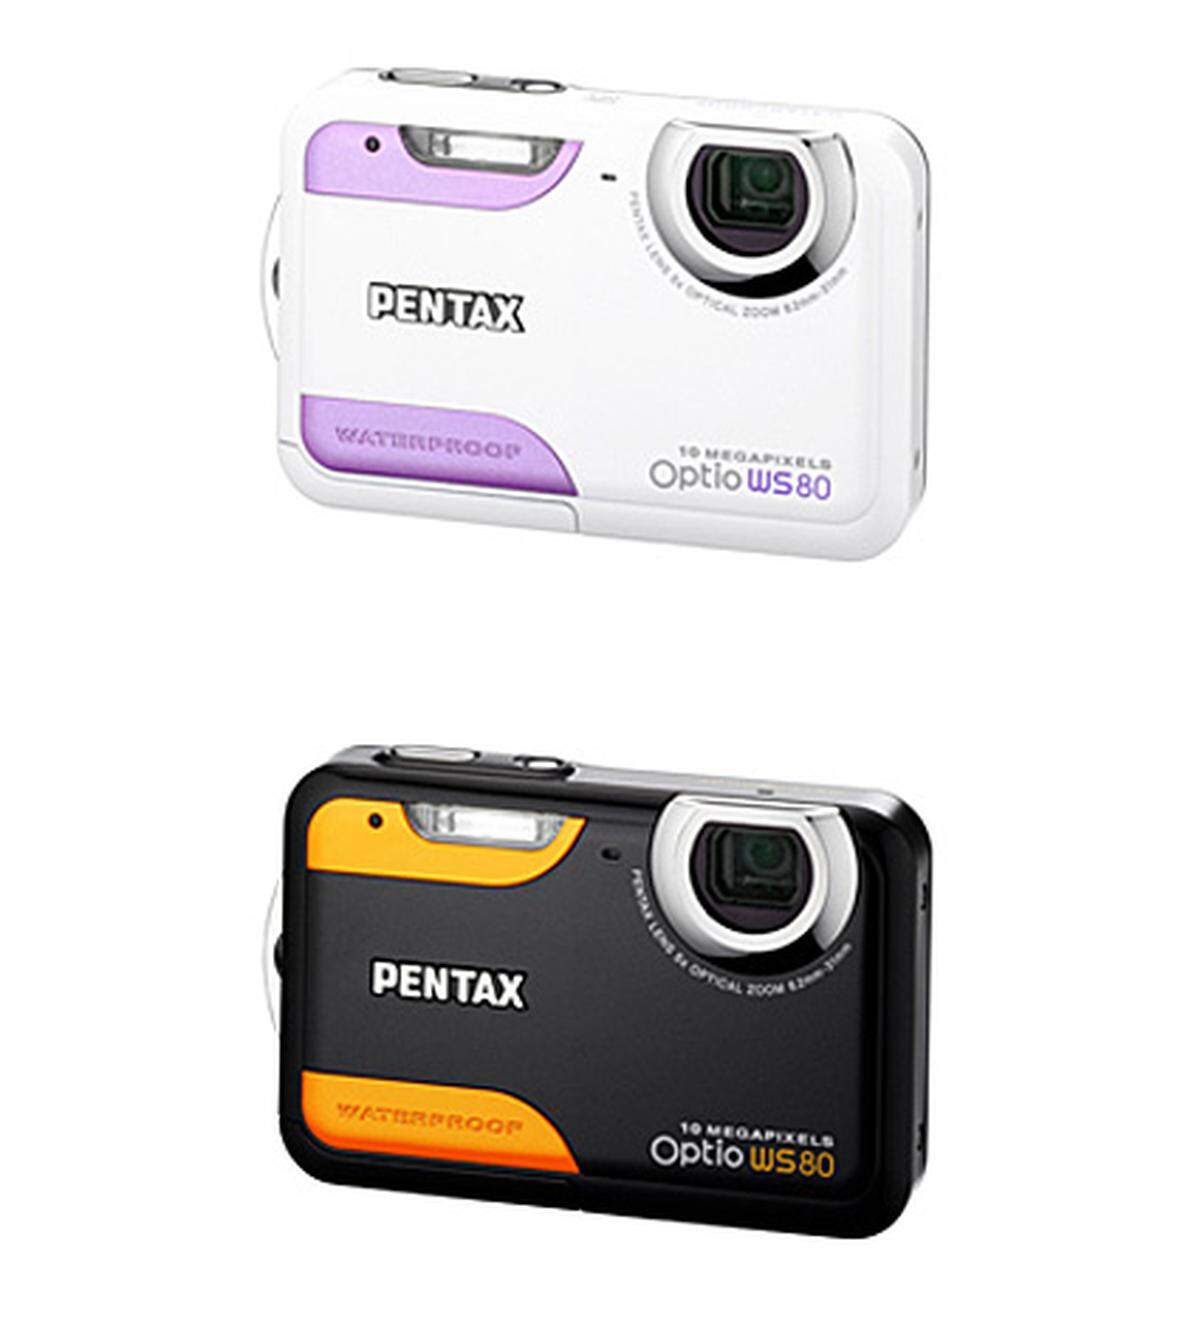 Pentax bietet seine Outdoor-Kamera WS80 jetzt im Doppelpack für Pärchen an. Einmal in schwarz für Männer und einmal in weiß für Frauen. Die WS80 ist ein wasserfester, stoß- und kälteresistenter, staubgeschützter 10-Megapixler im Hosentaschenformat. Als Spaßkamera für Winter- oder Sommerurlaub ist die bunte Cam also bestens gerüstet. Dem Kombiangebot liegen deshalb auch zwei passende Badetücher bei. Rund 500 Euro.